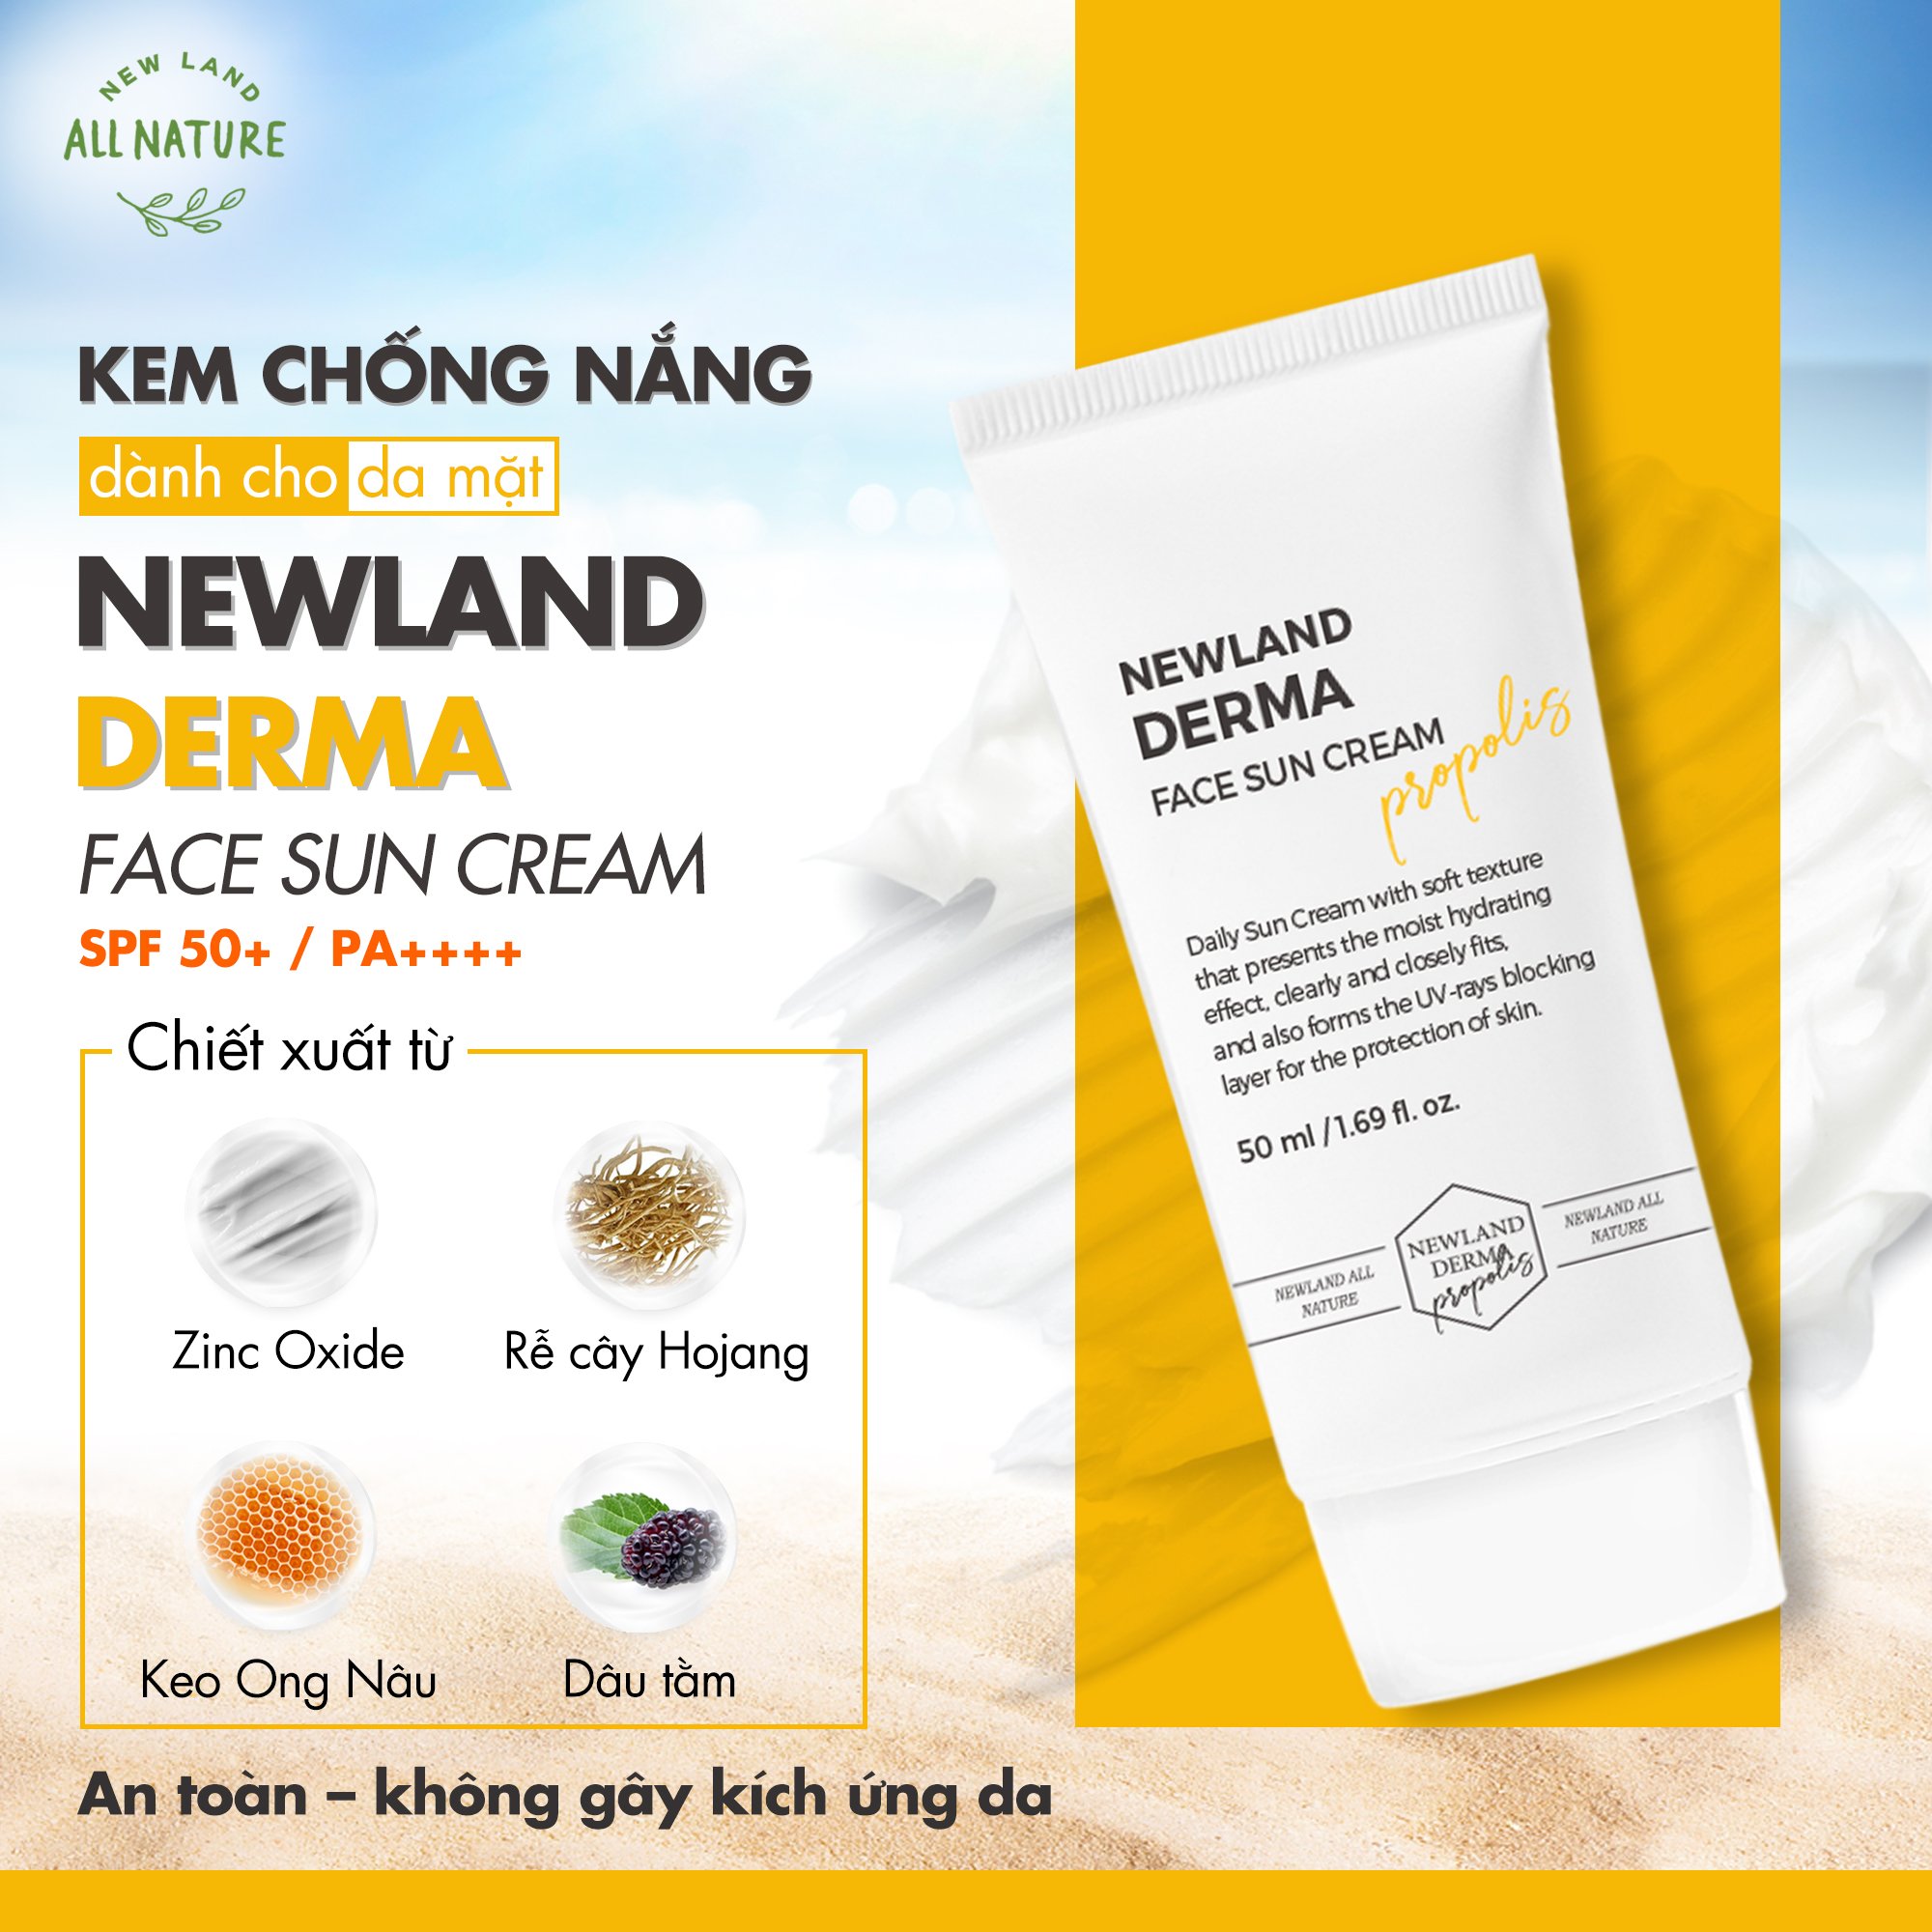 https://photo.salekit.com/uploads/salekit_413fef099d41eb62d51a8f6e8956743b/kem-chong-nang-da-mat-newland-derma-face-sun-cream-5.jpg